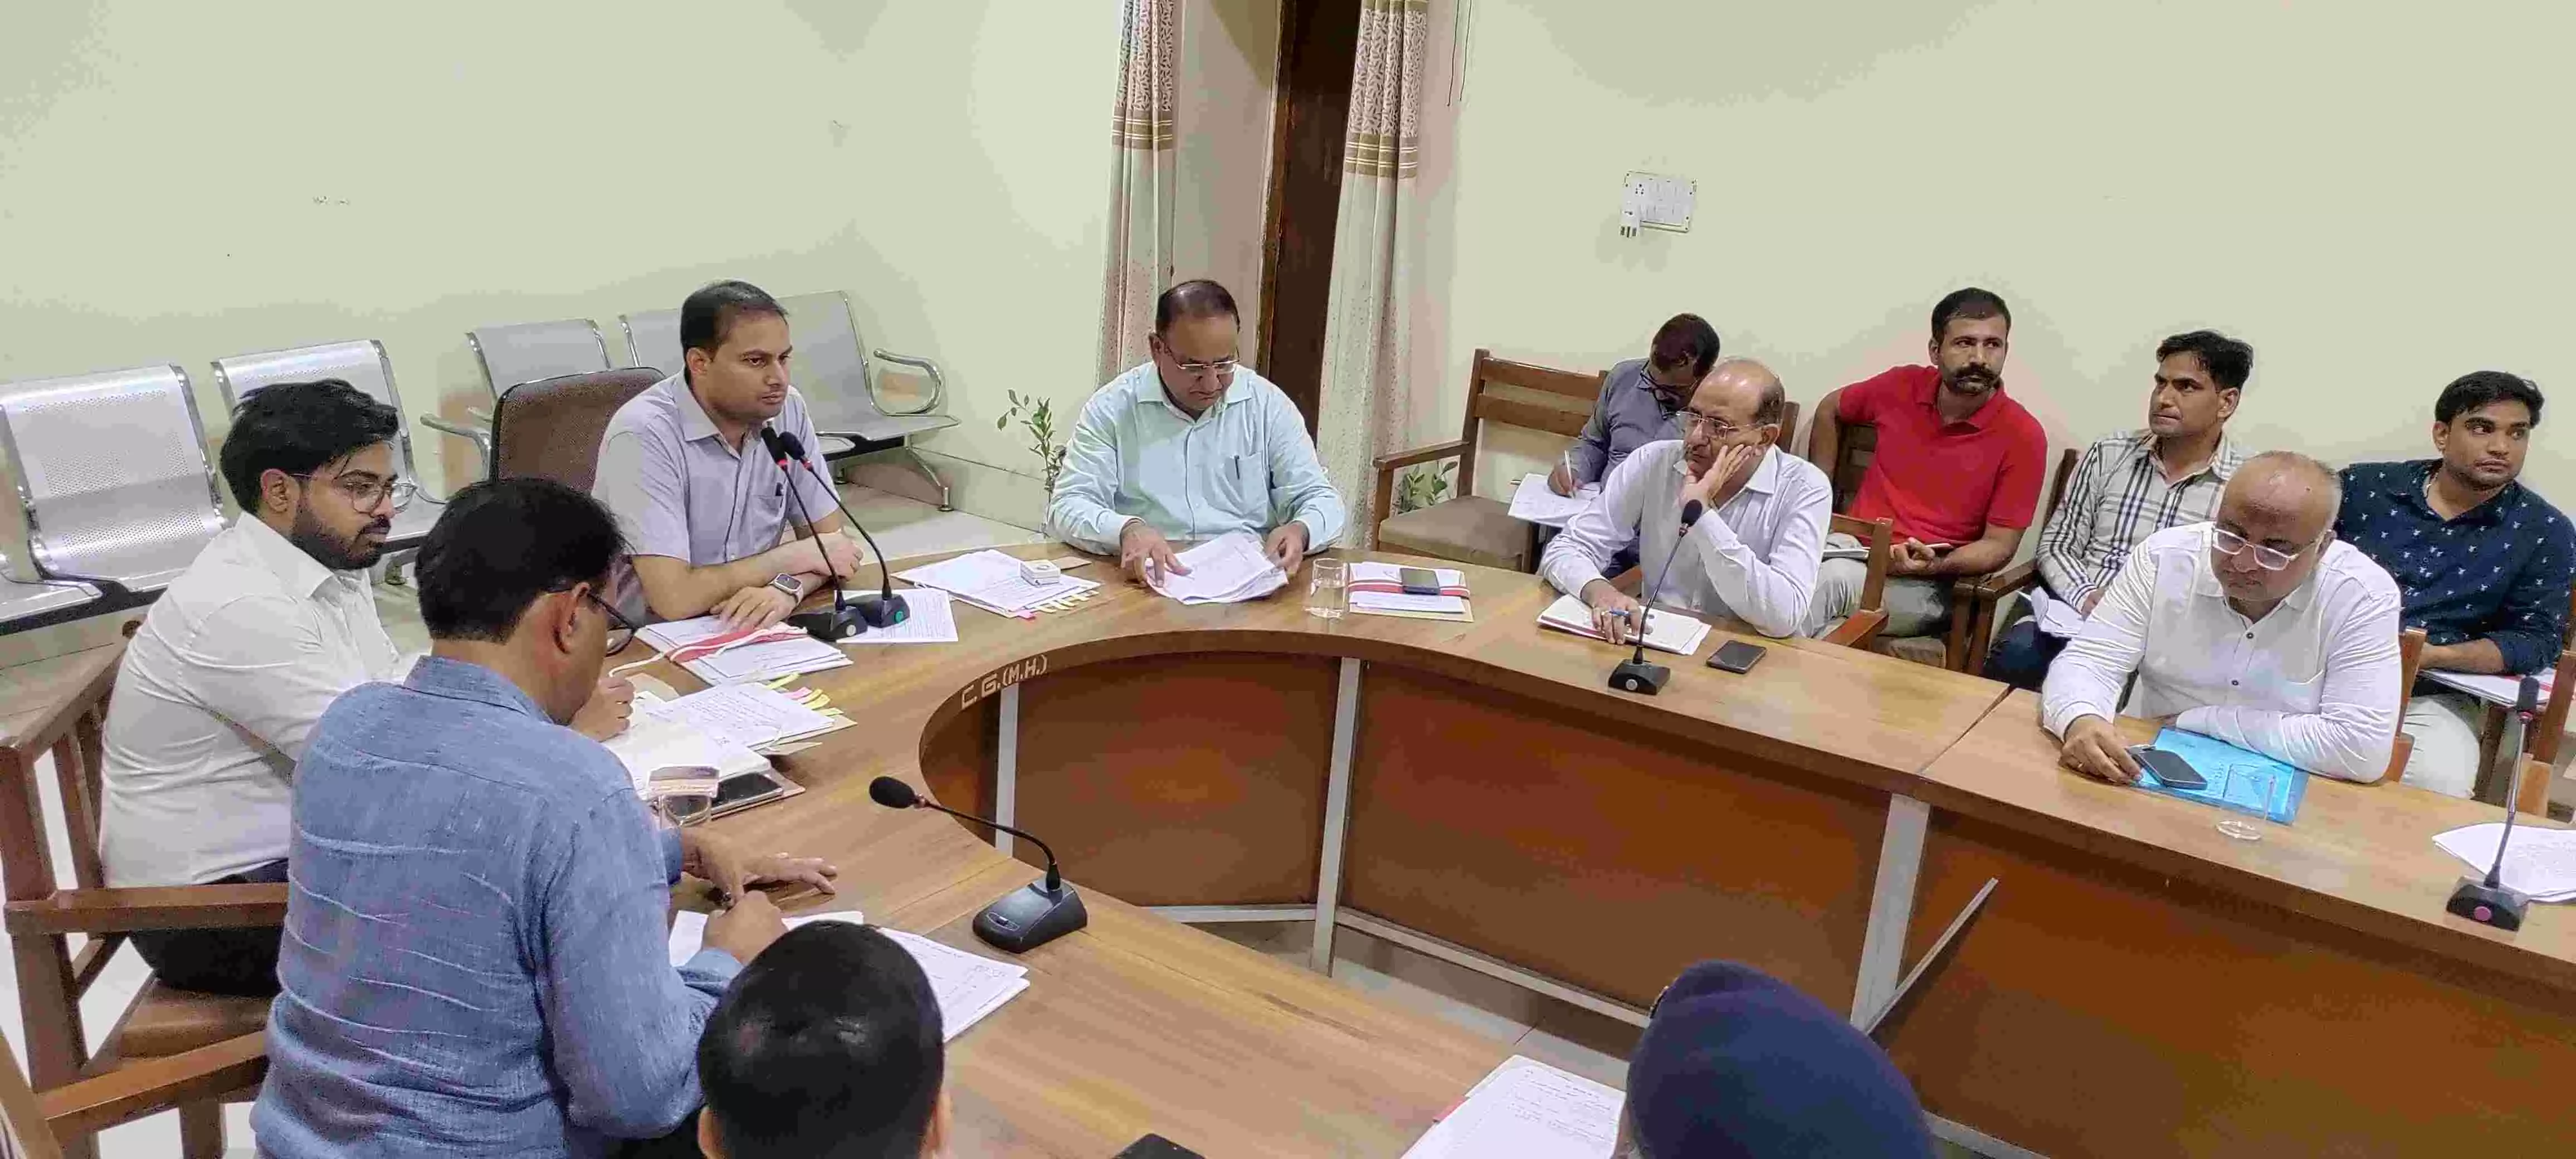 Shri Ganga Nagar : जिला स्तरीय अधिकारियों की साप्ताहिक समीक्षा बैठक में जिला कलेक्टर ने दिये निर्देश